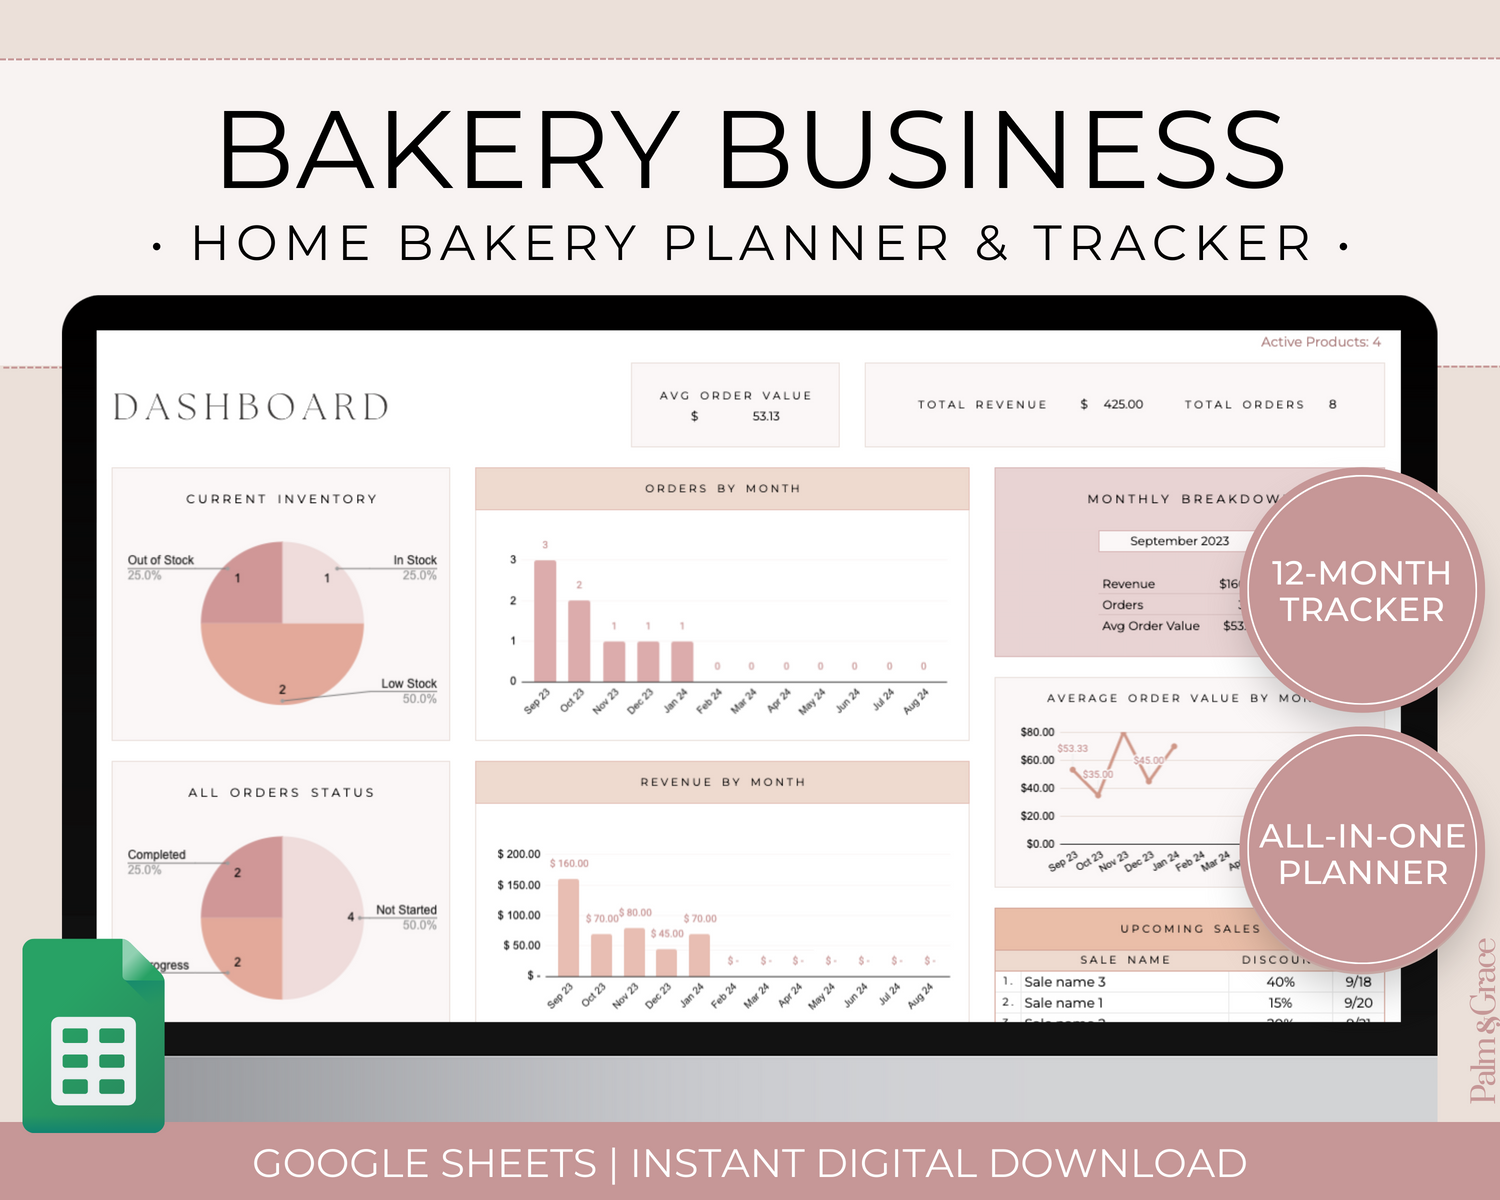 Bakery business planner spreadsheet for Google Sheets